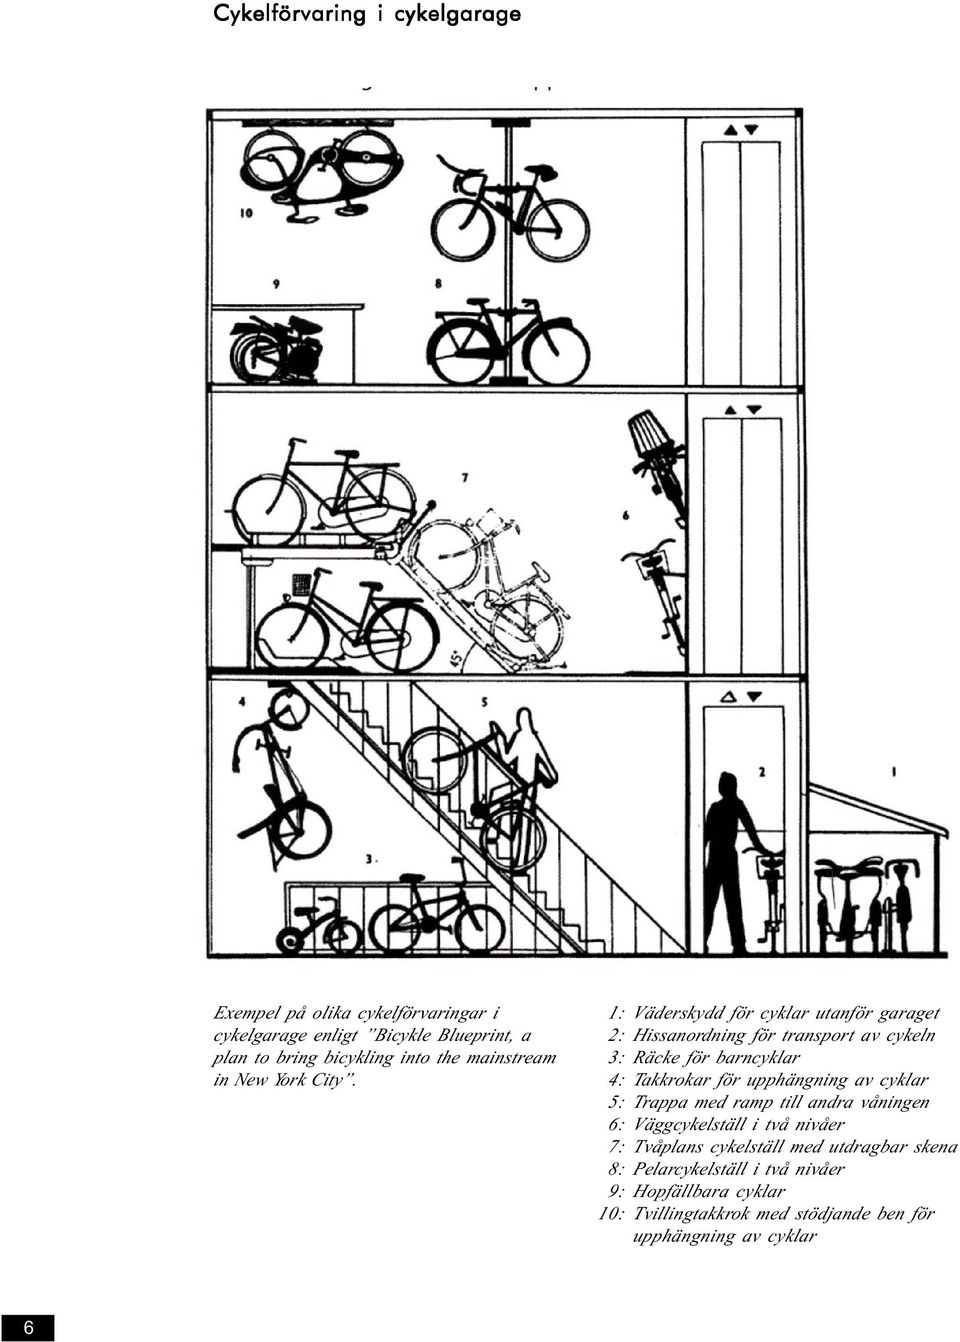 1: Väderskydd för cyklar utanför garaget 2: Hissanordning för transport av cykeln 3: Räcke för barncyklar 4: Takkrokar för upphängning